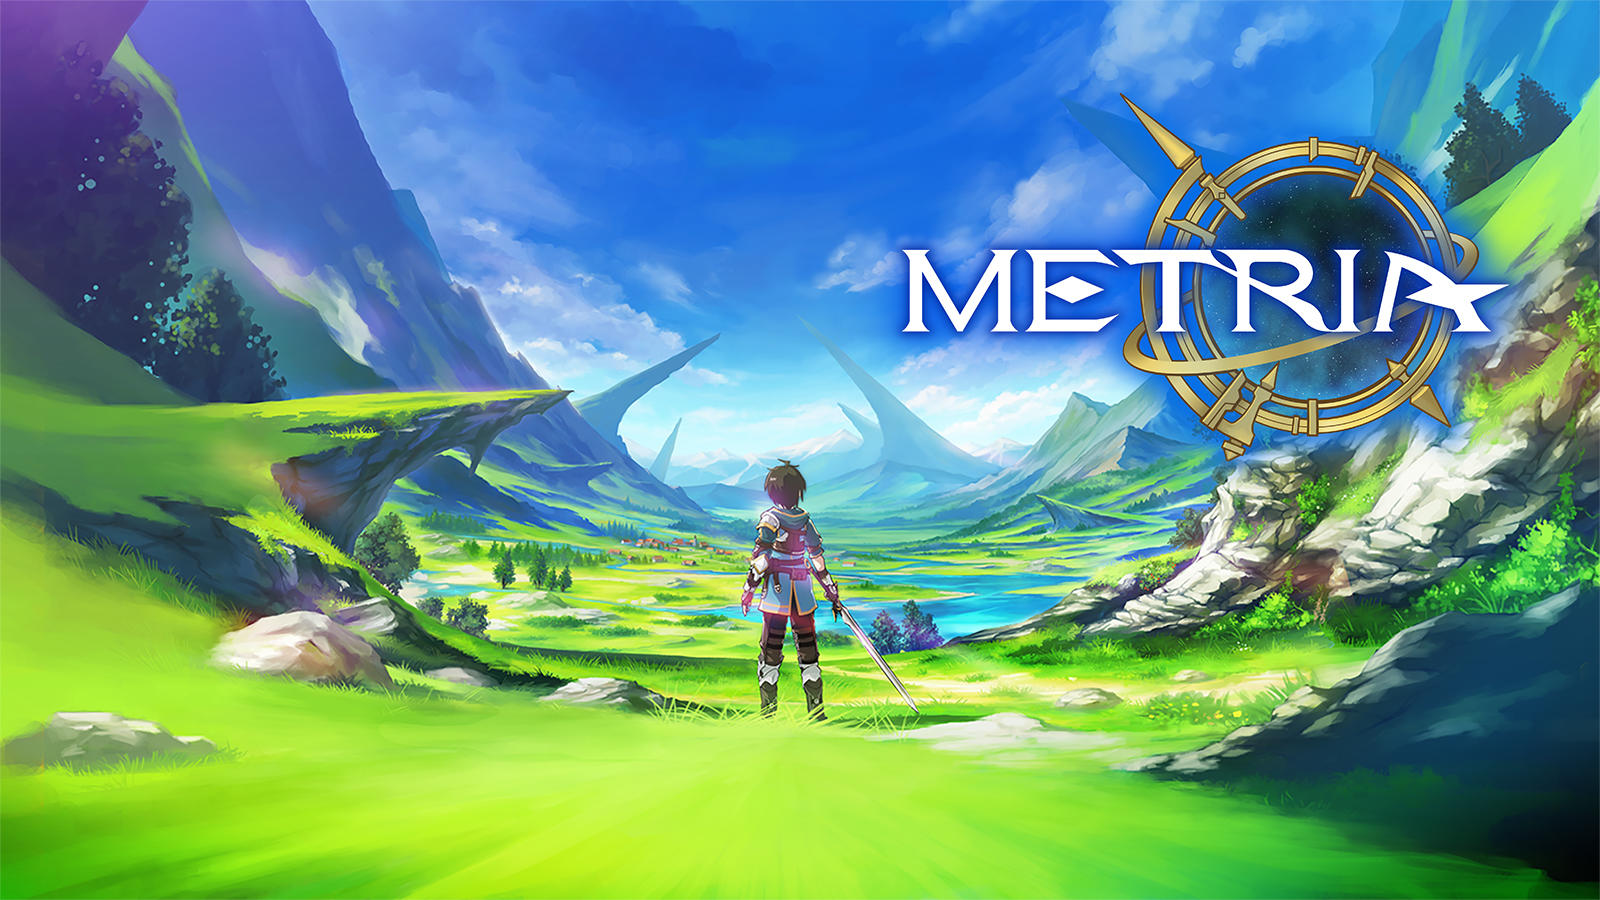 Screenshot 1 of METRIA 3.0.0